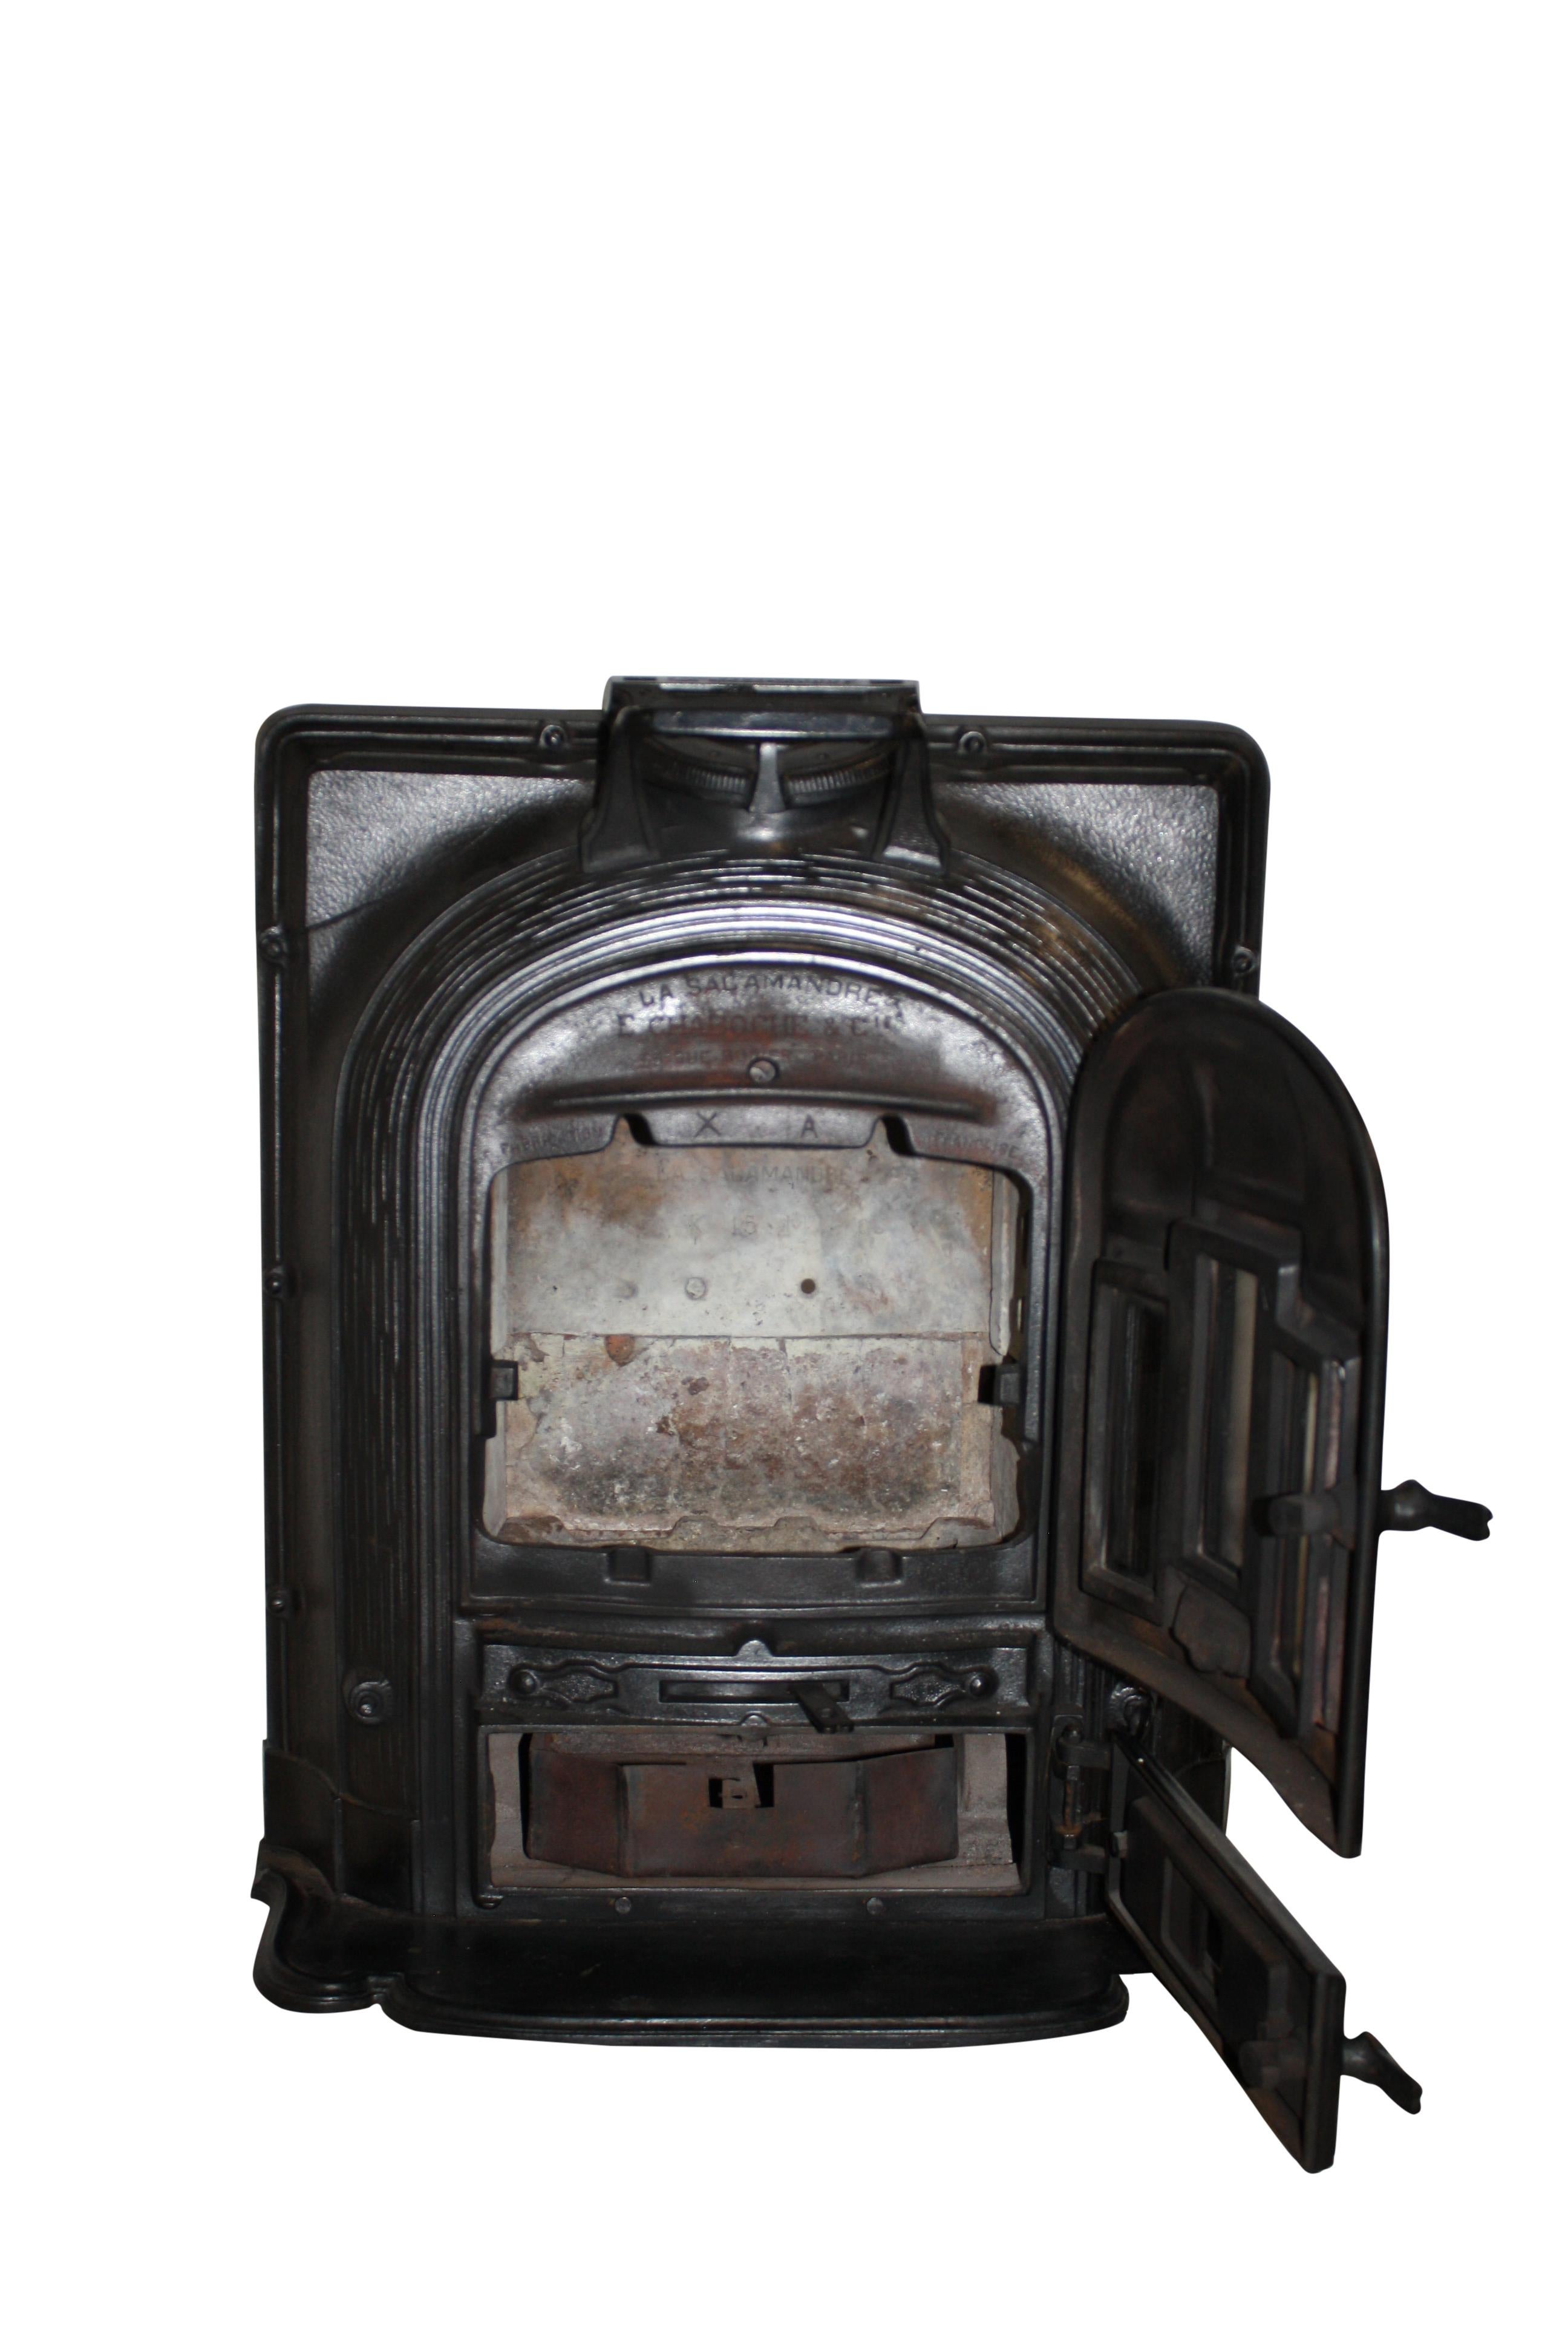 1920 wood stove